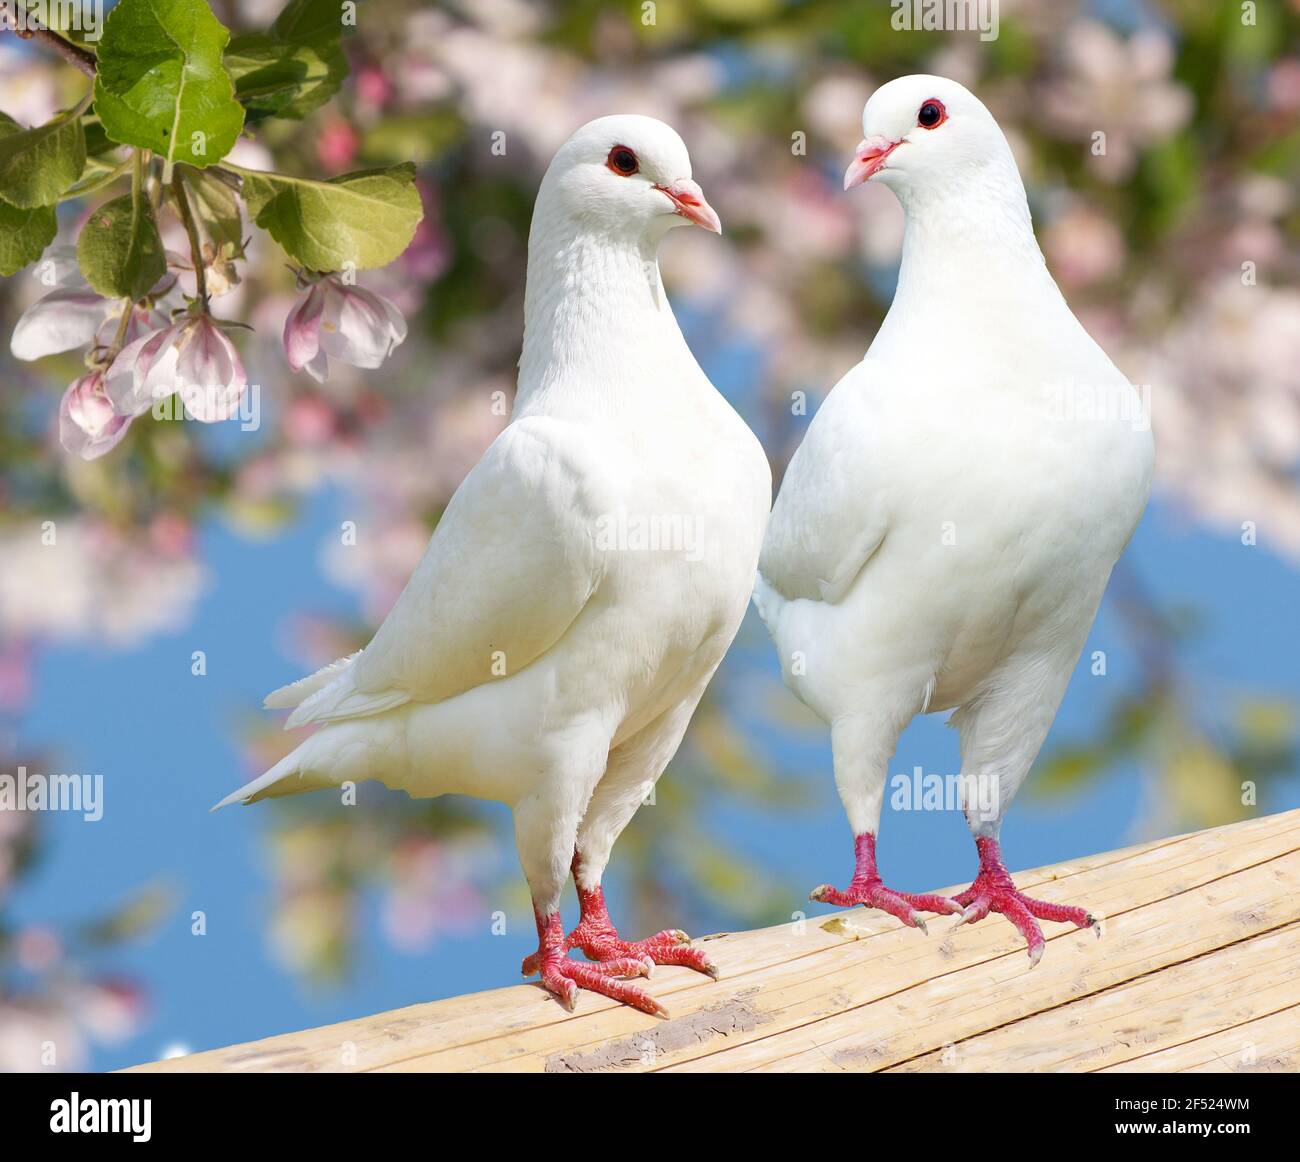 Due piccioni bianchi su sfondo fiorito - piccione imperiale - ducula Foto Stock